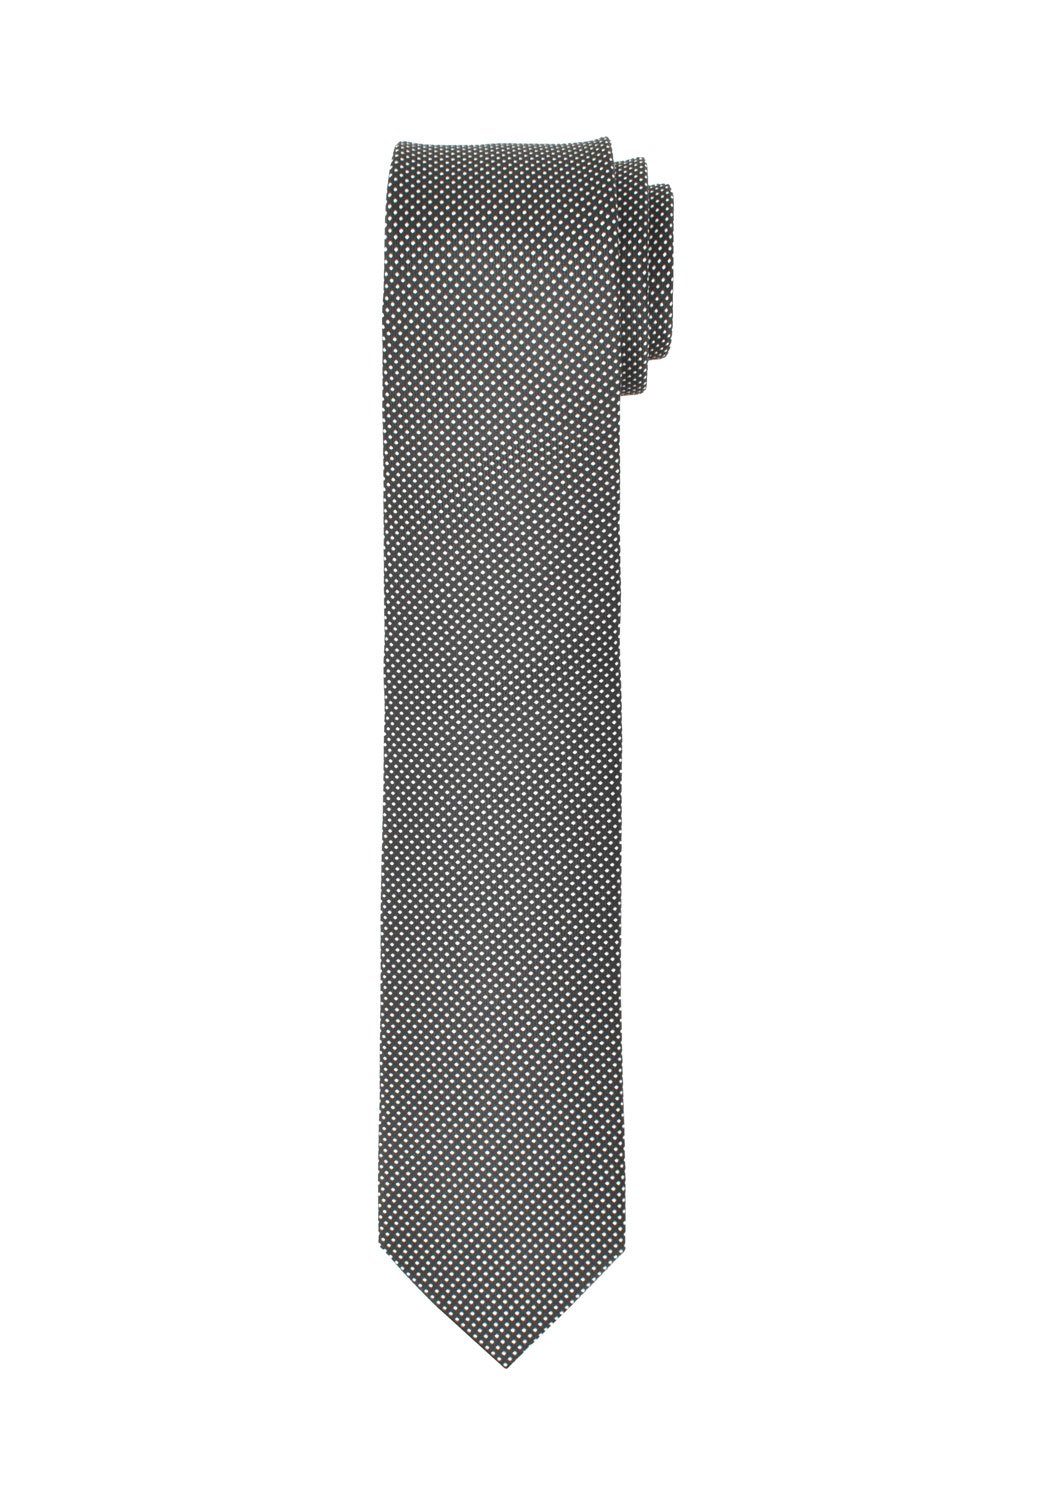 MARVELIS Krawatte Krawatte - Gepunktet - Schwarz/Weiß - 6,5 cm